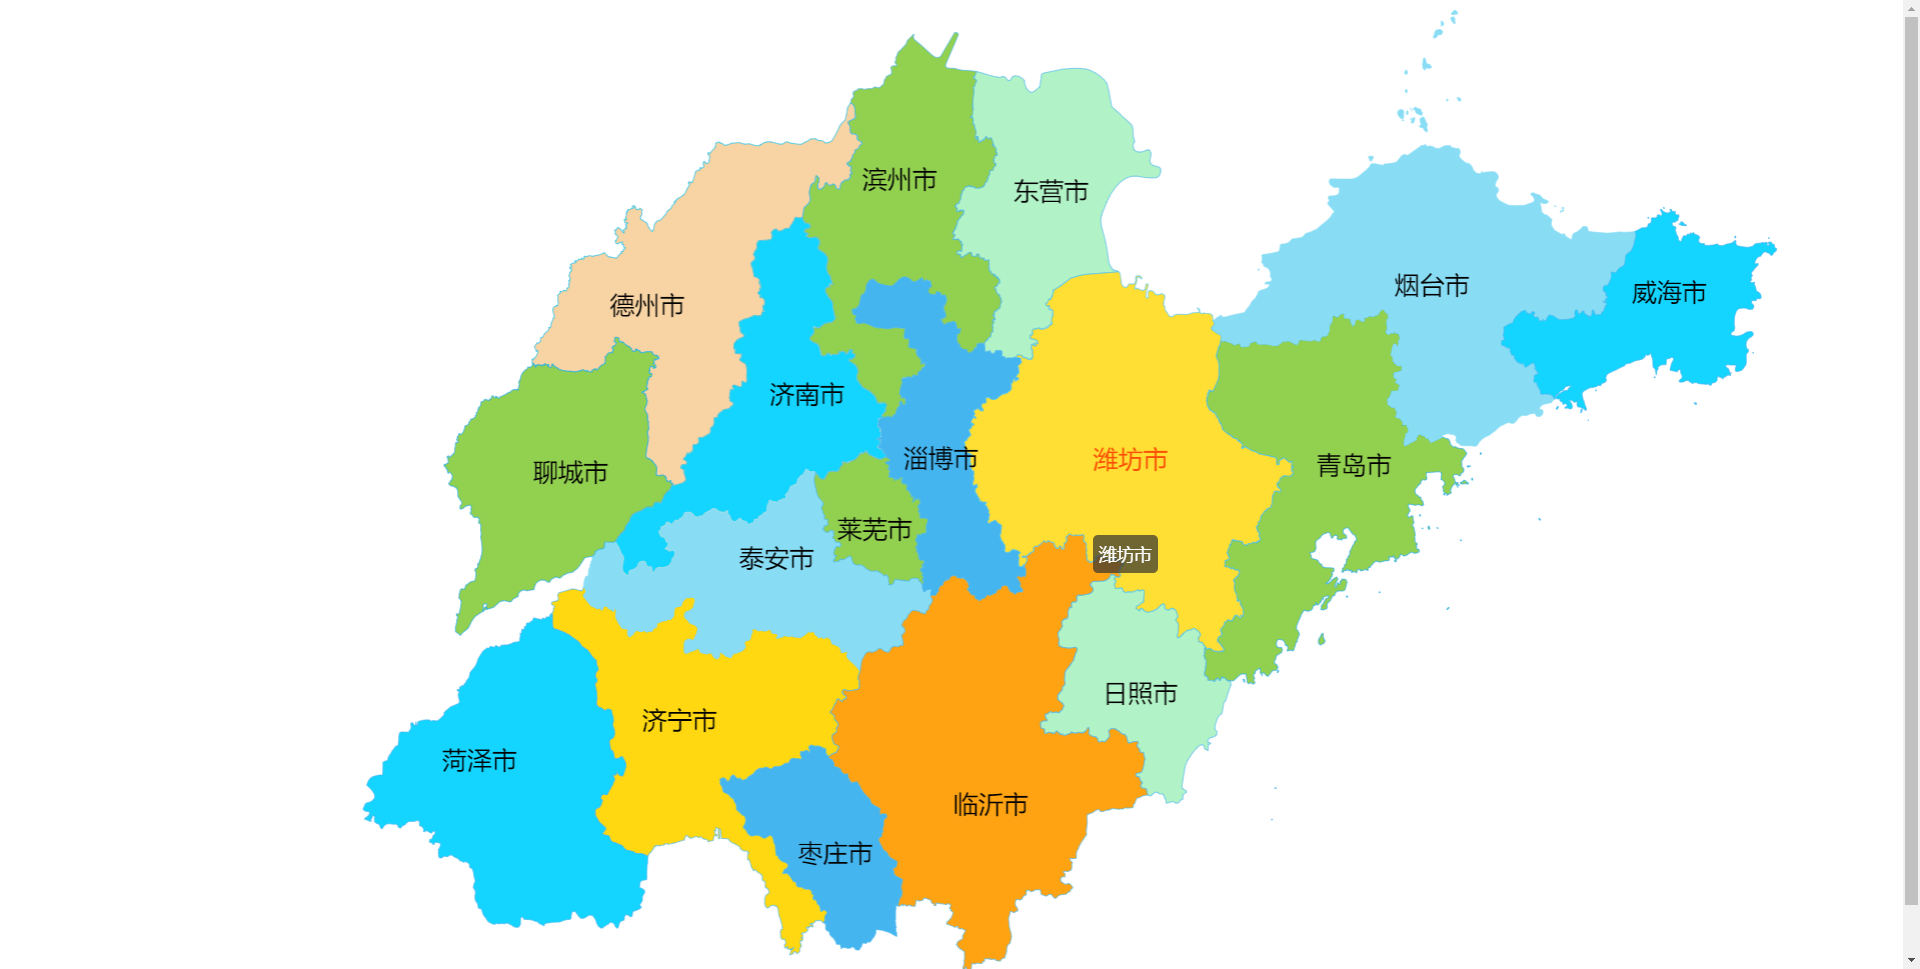 echarts数据可视化山东省地图，划分清晰，鼠标悬停变色【20250】